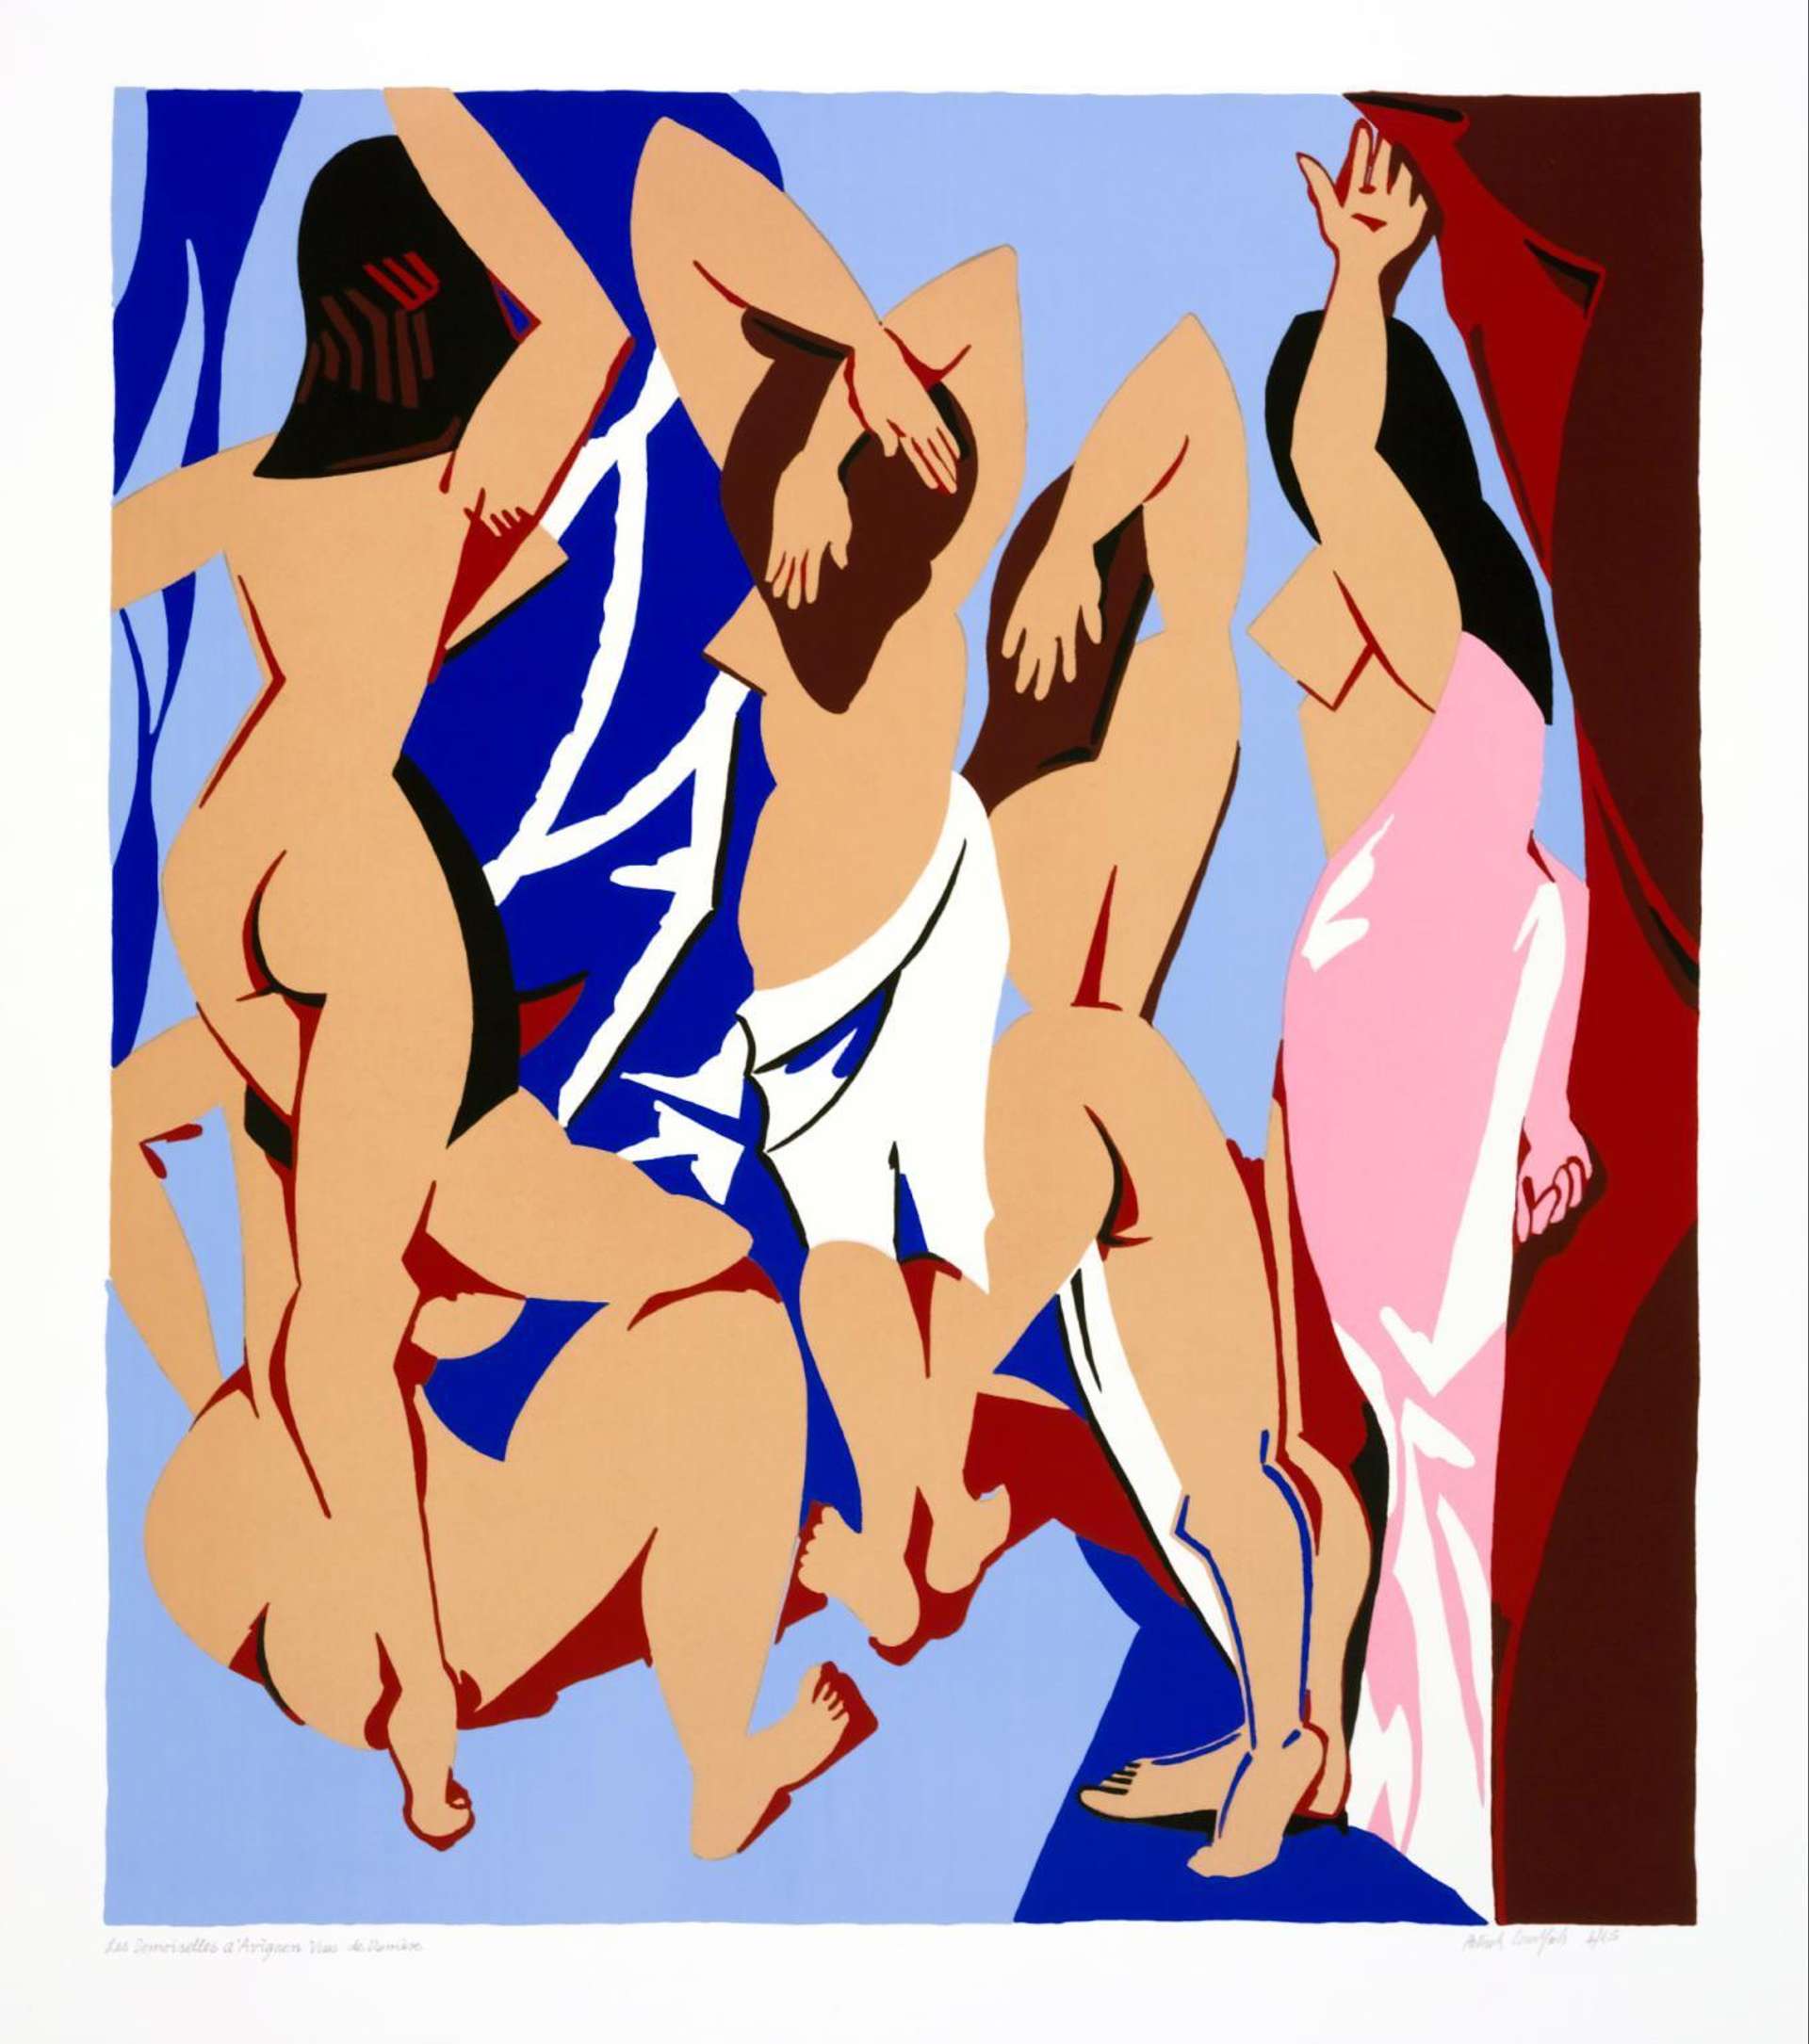 Les Demoiselles d’Avignon Vues De Derrière © Patrick Caulfield 1999